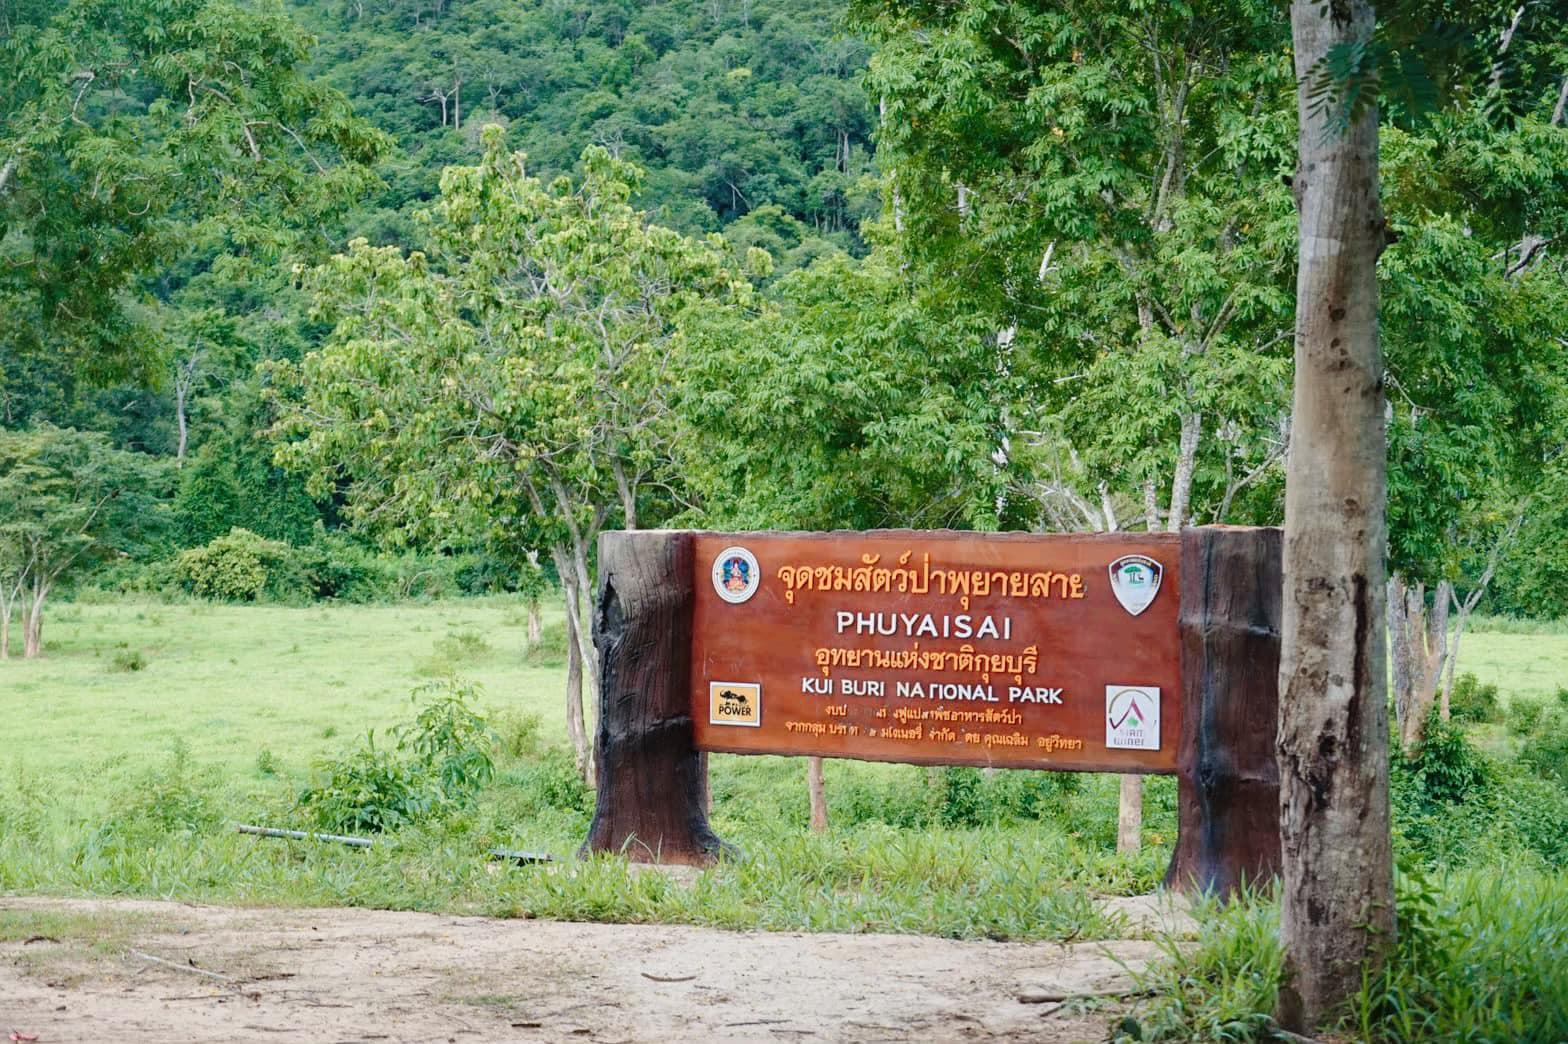 Kui Buri National Park